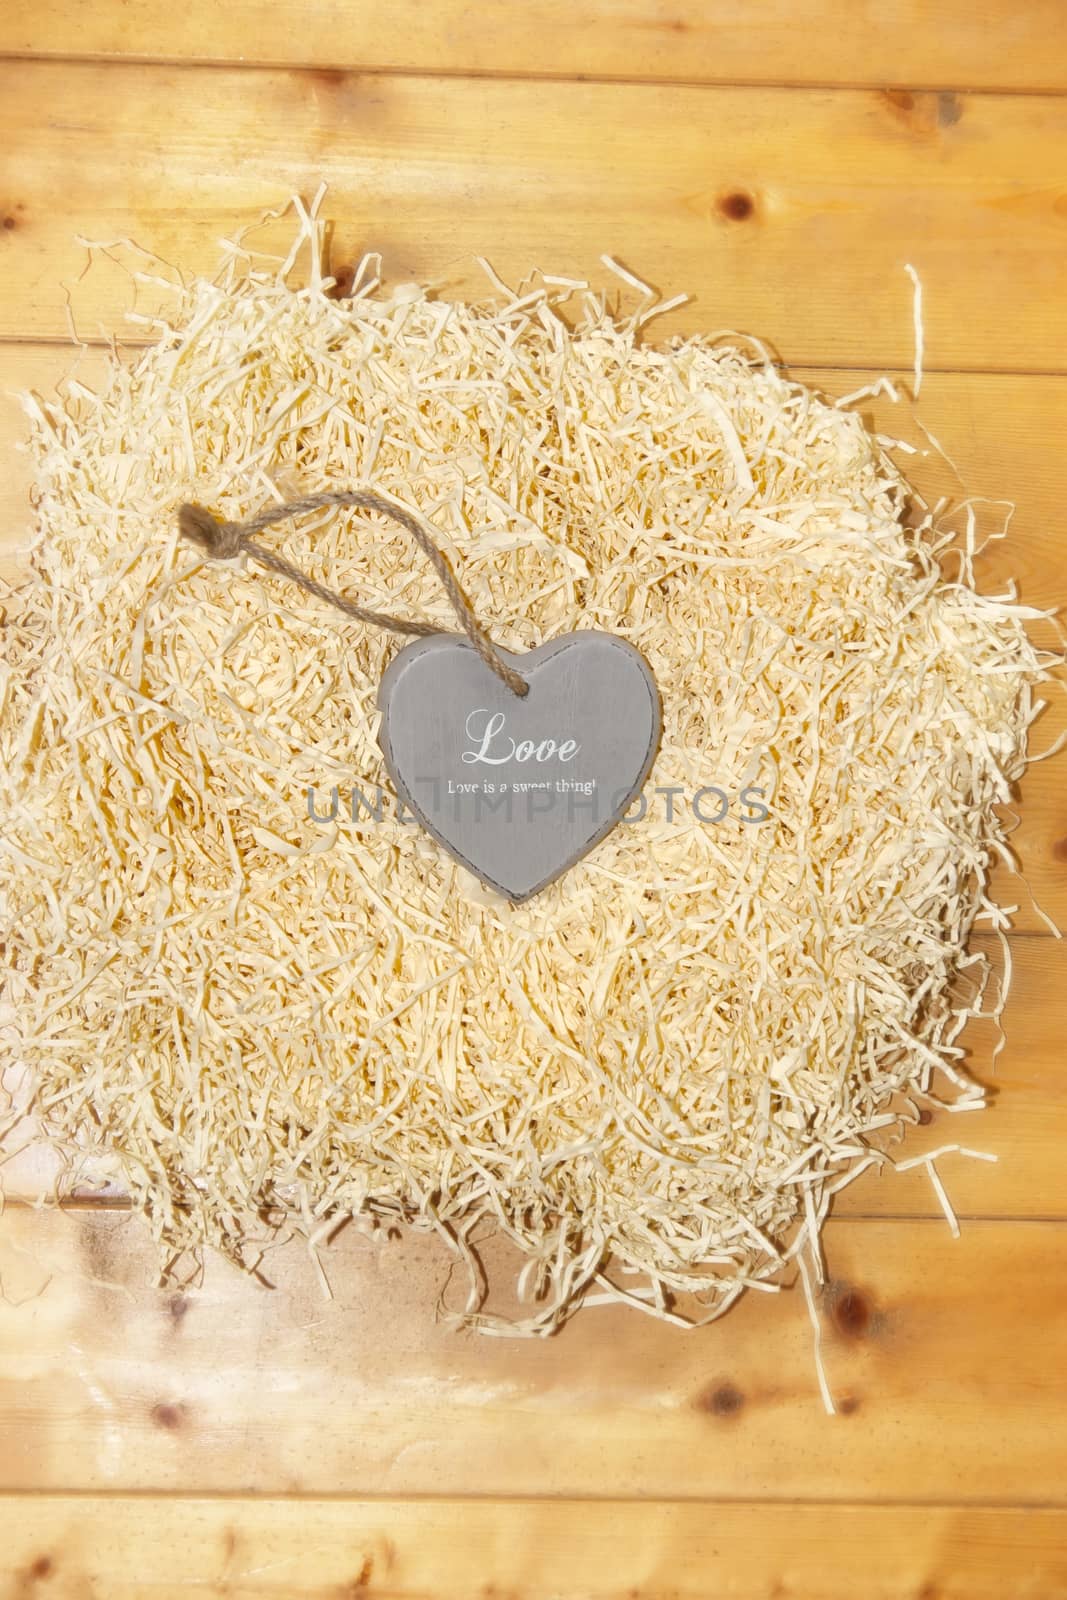 lone heart in a love nest by morrbyte